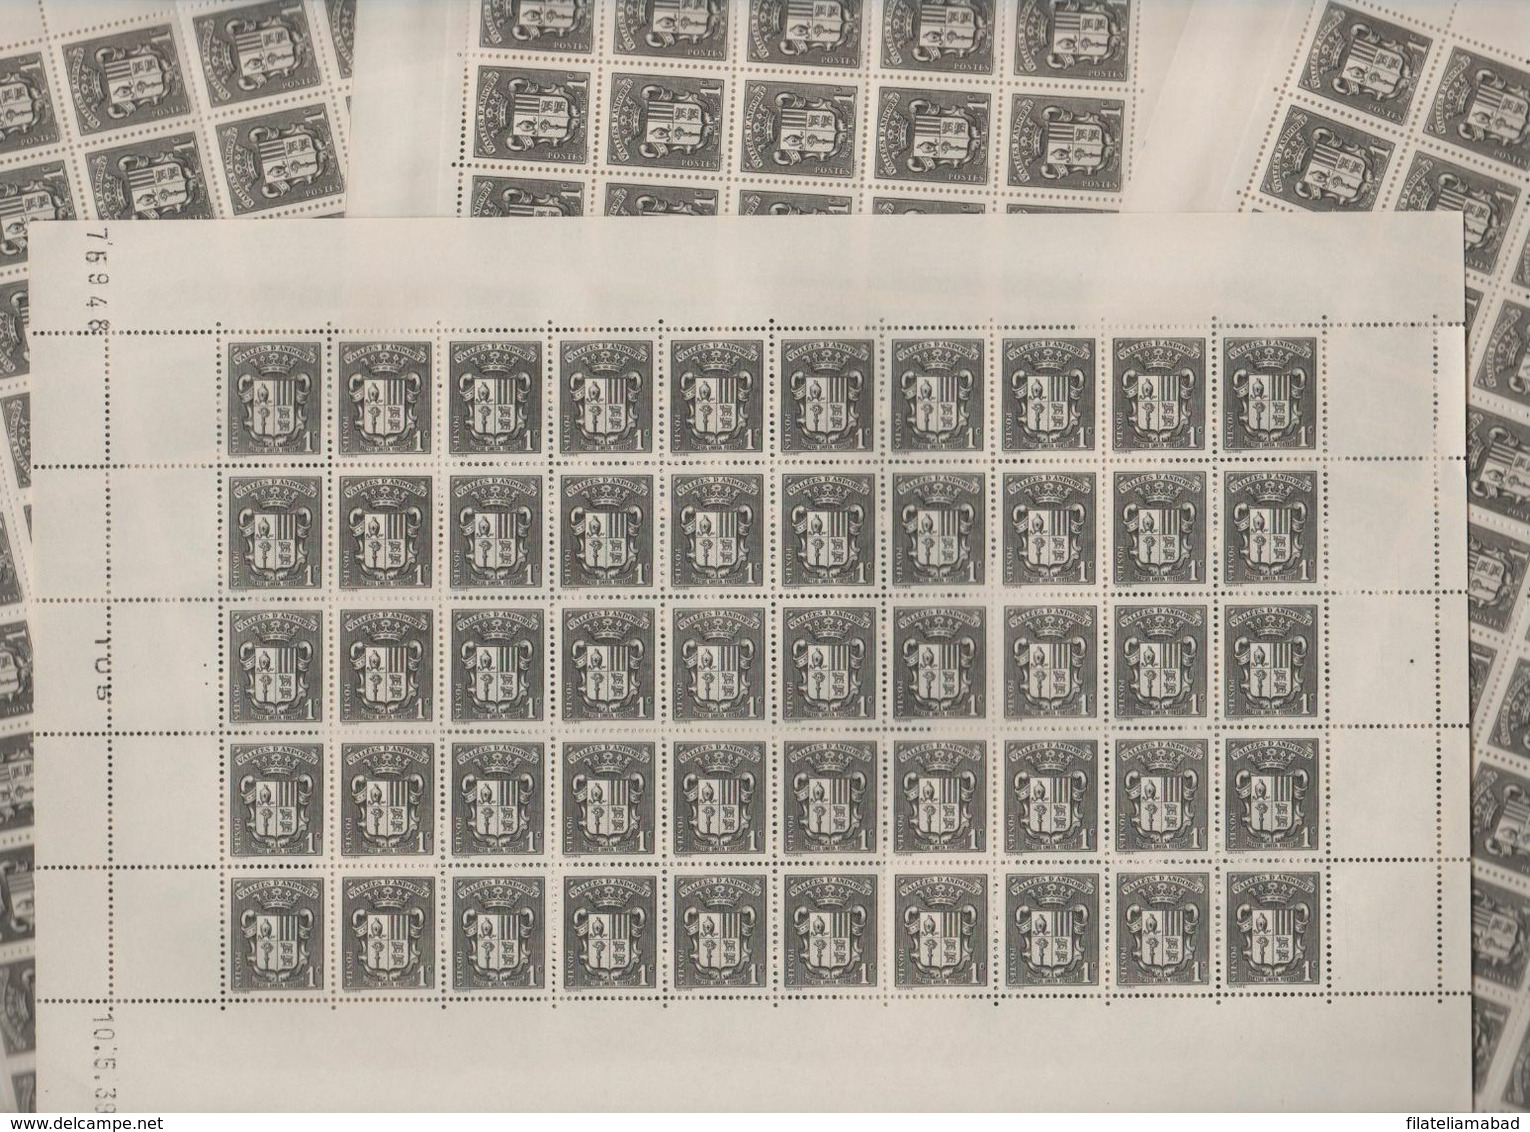 ANDORRA CORREO F..200 SELLOS Nº 47 DEL AÑO 1937-43 EN MUY NUEN ESTADO C. 100,00€  (C.H) - Blocks & Sheetlets